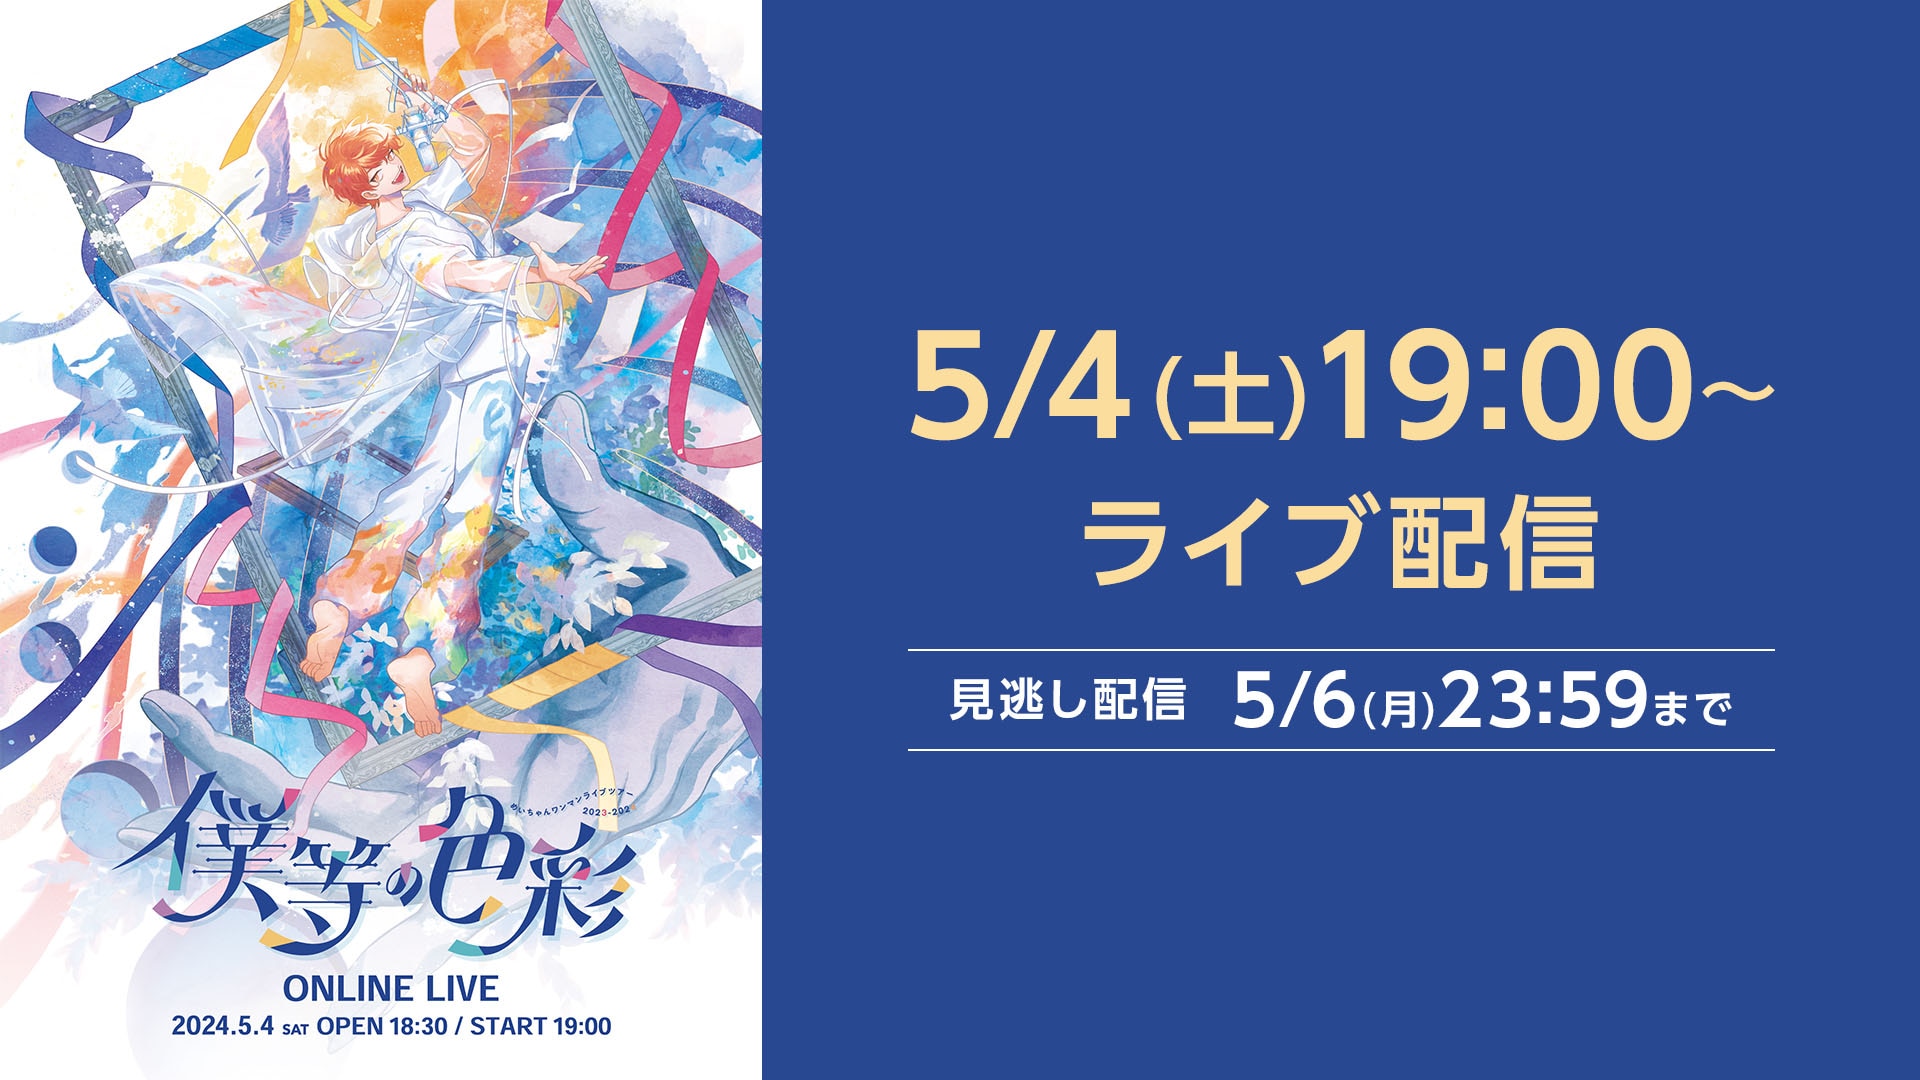 めいちゃんワンマン ONLINE LIVE「僕等の色彩」 | ライブ配信（LIVE 